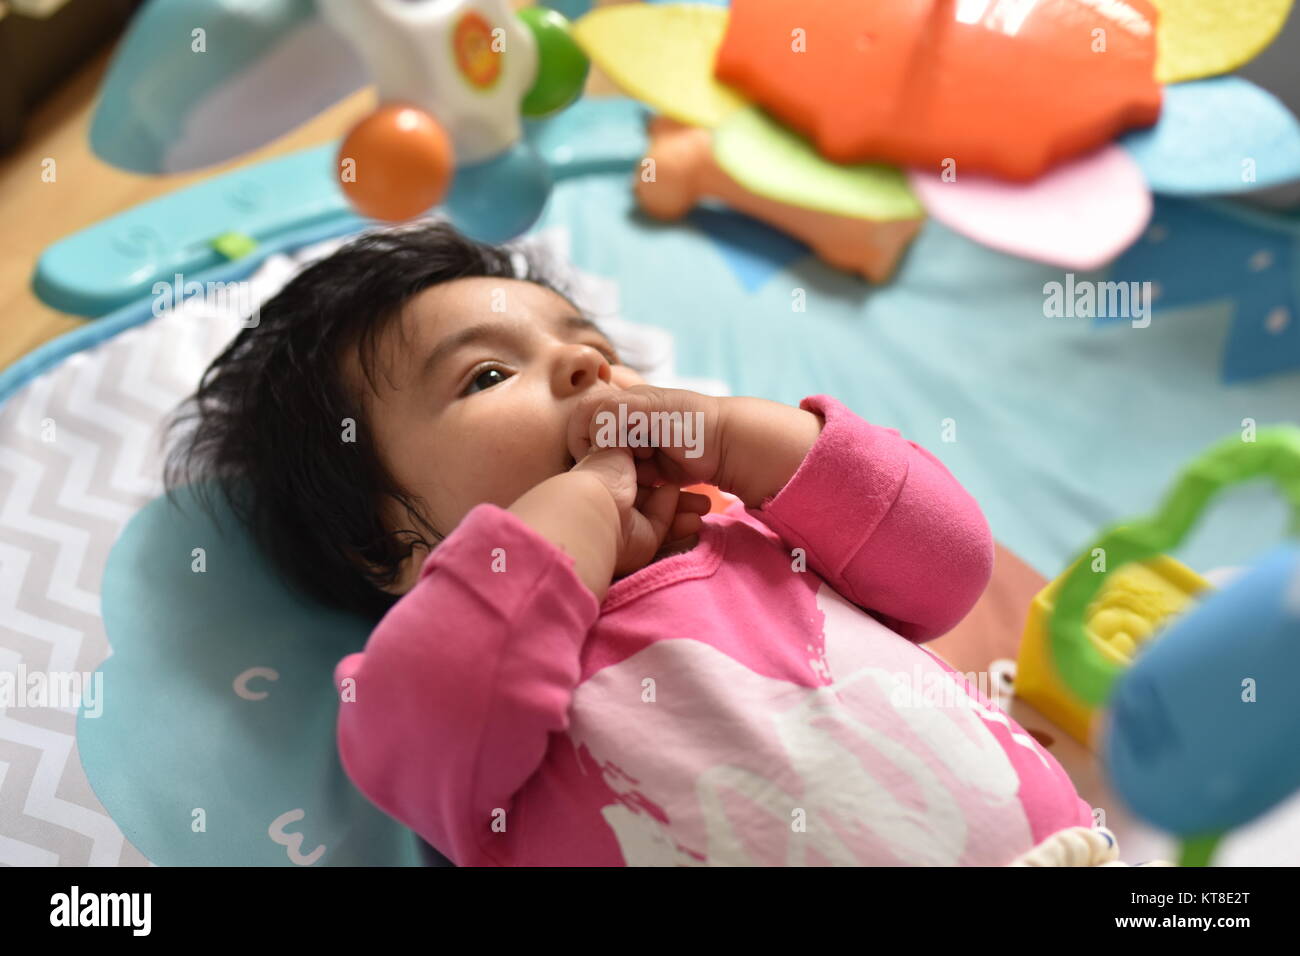 Baby Girl avec les mains de bouche observe attentivement ses jouets colorés d'un tapis de jeu Banque D'Images